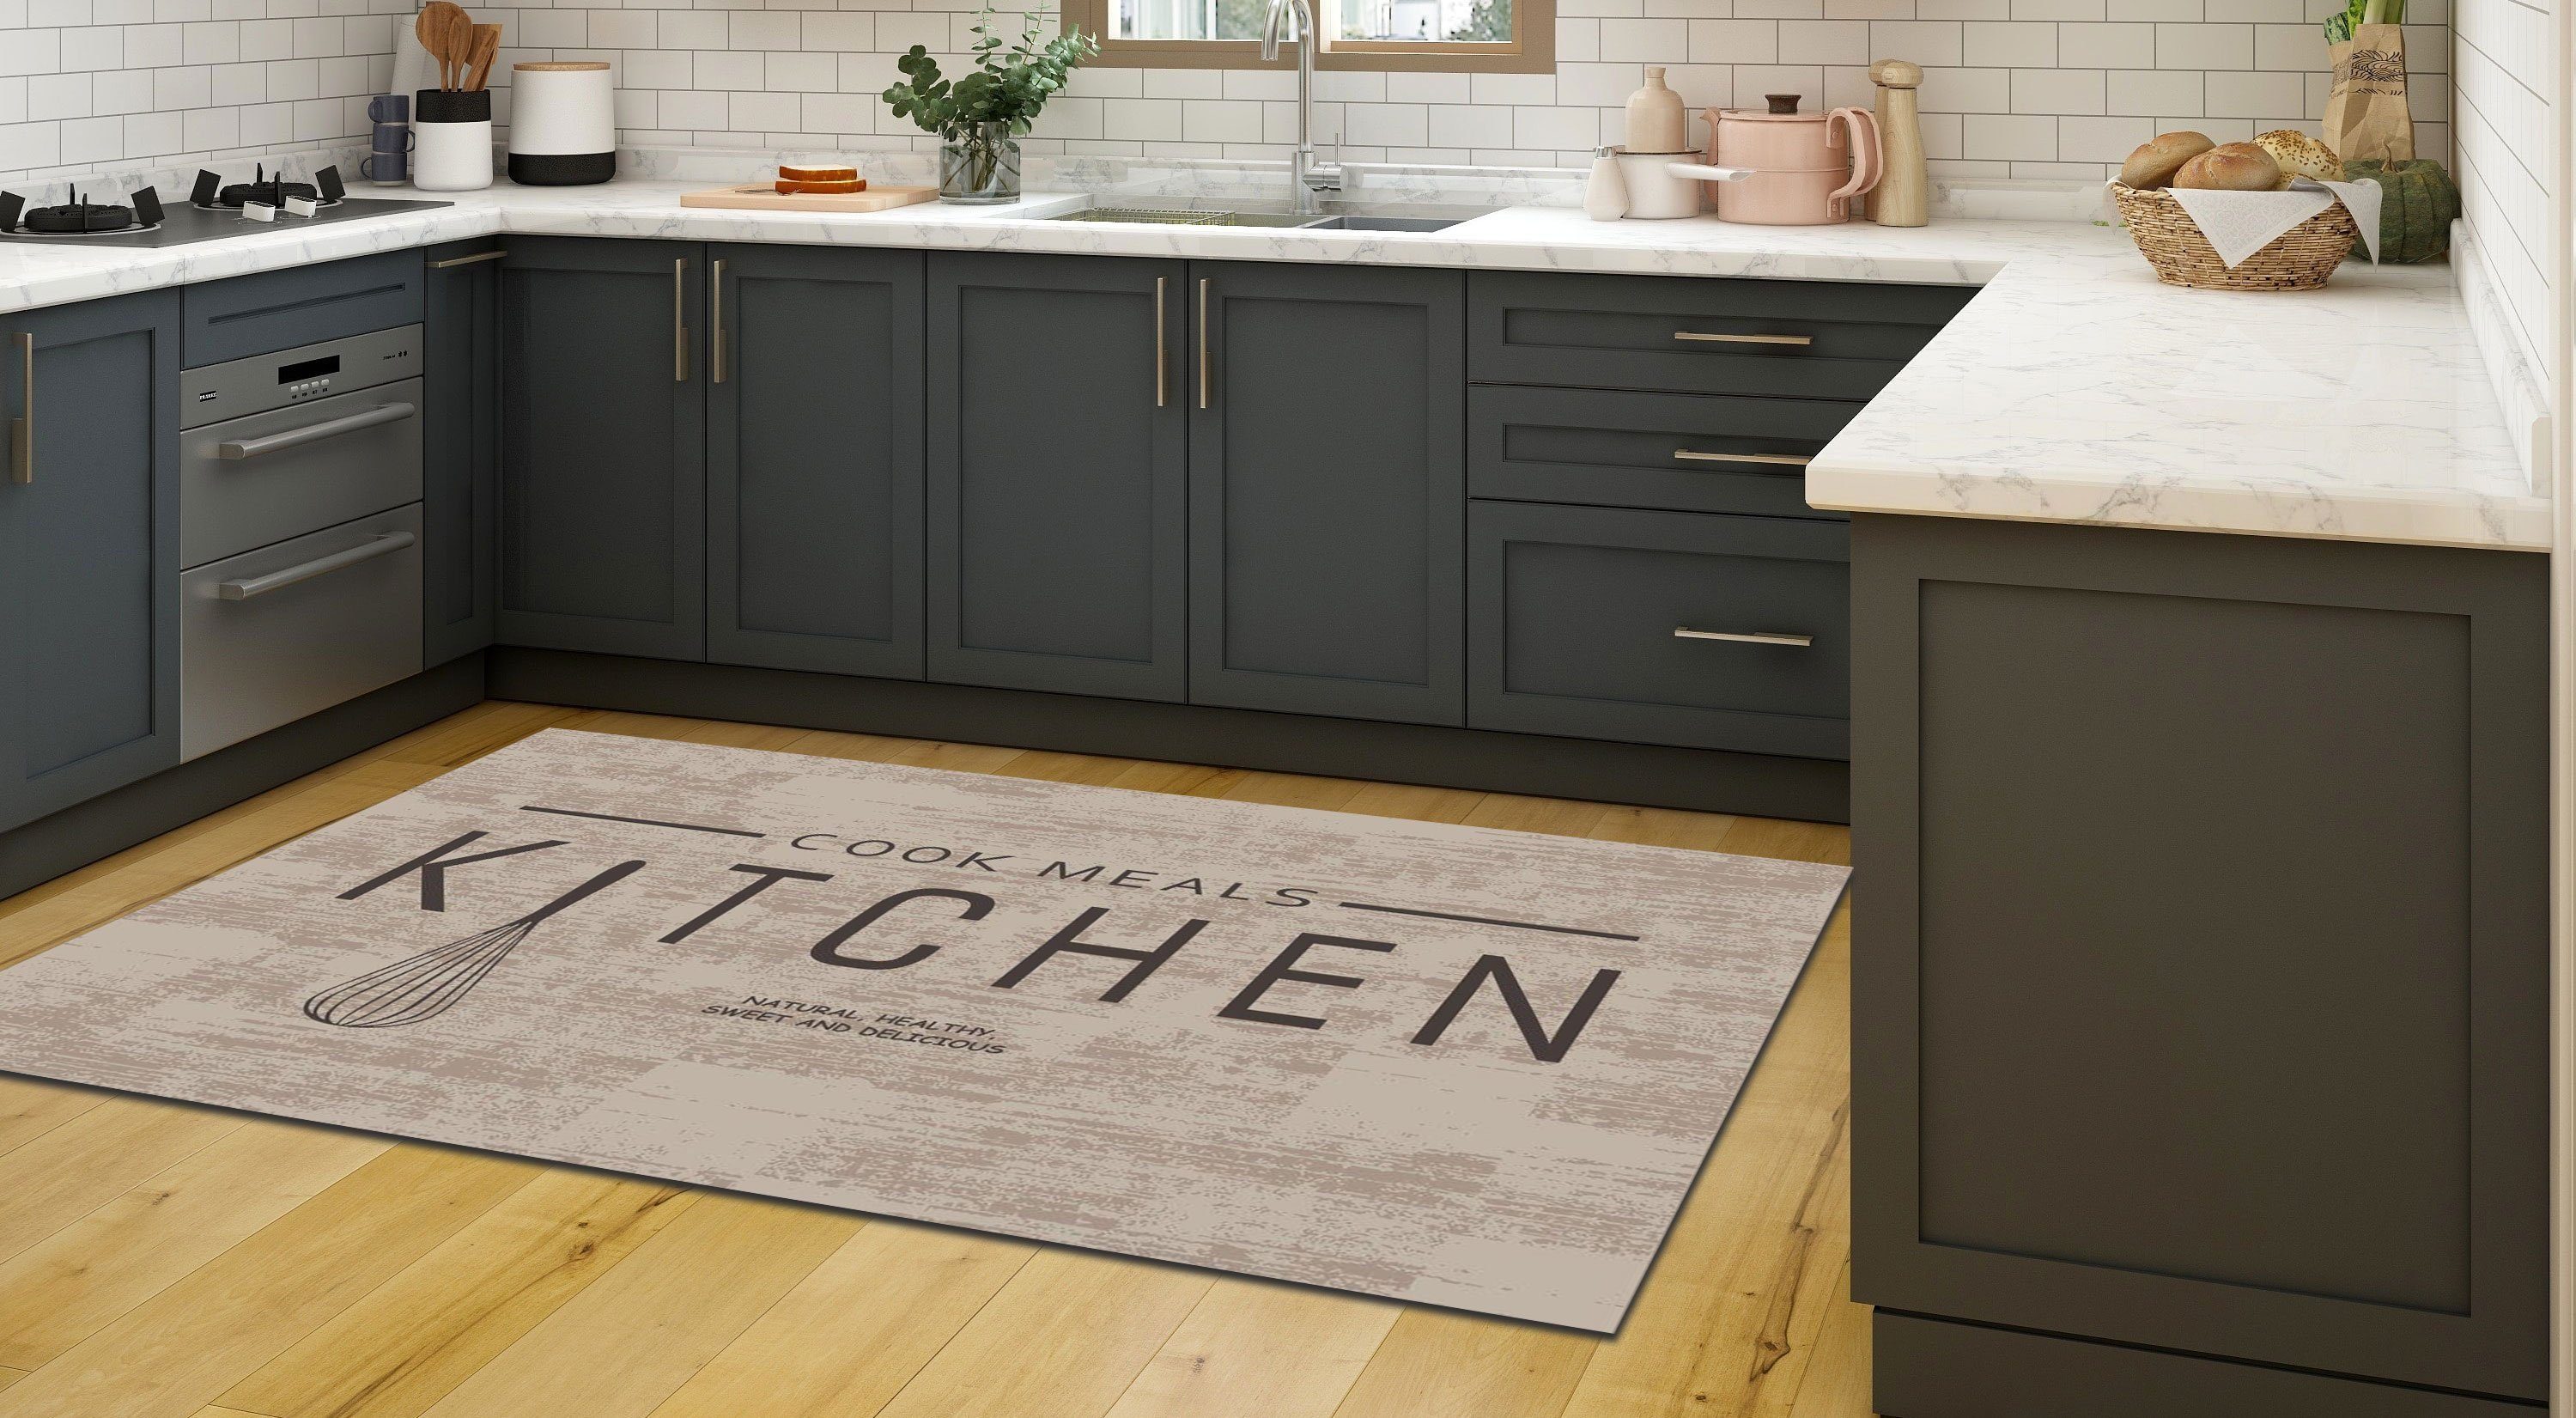 Jungengel mm, Meals Kitchen Cook Höhe: & Praktisch, Fußbodenheizungsgeeignet Textilien, Universell einsetzbar, 6 Küchenläufer Teppich Waschbar Beige